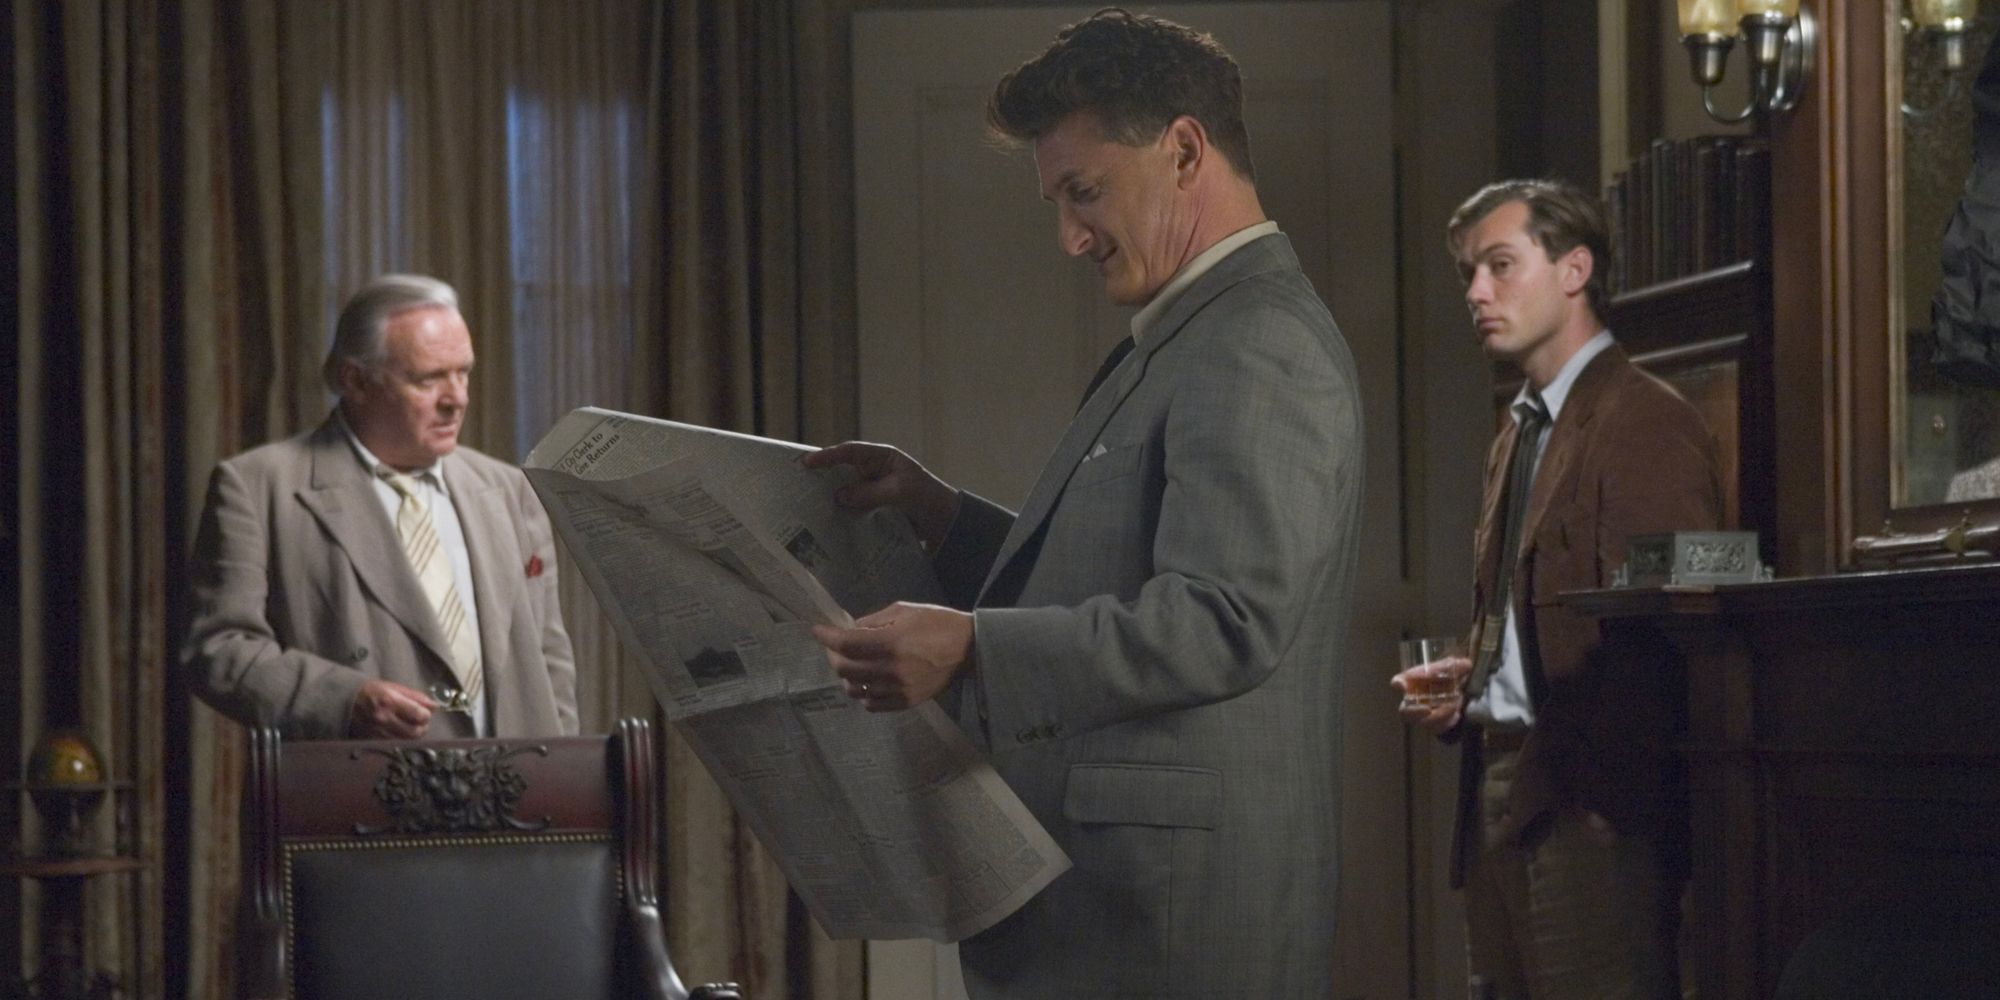 Un homme politique américain des années 1940 lit le journal tandis que deux de ses conseillers se tiennent derrière lui.